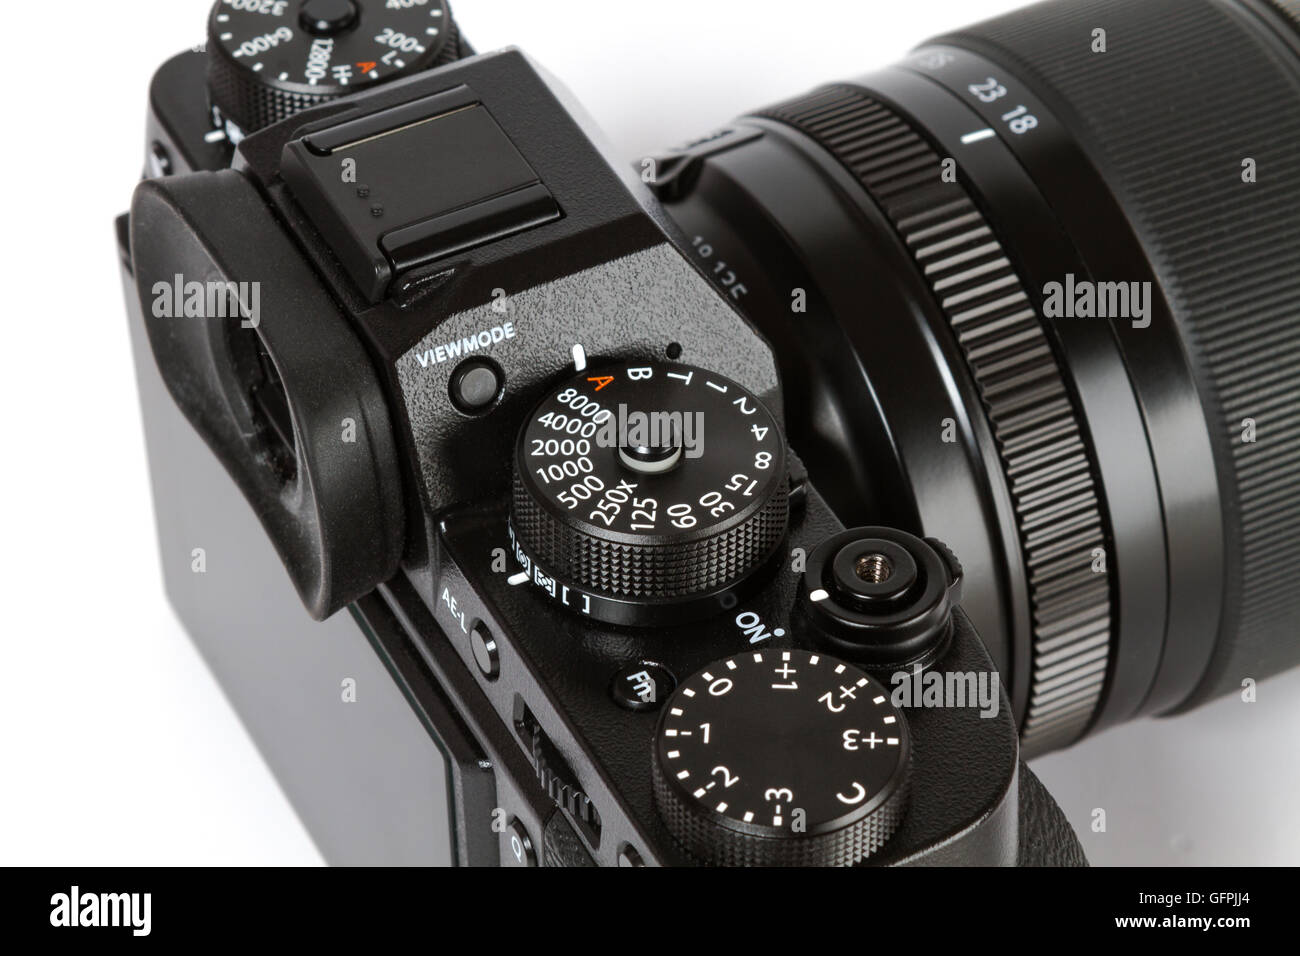 Les boutons de commande de photos de détails FUJIFILM X-T2, 24 mégapixels, caméra vidéo 4K mirrorless sur fond blanc Banque D'Images